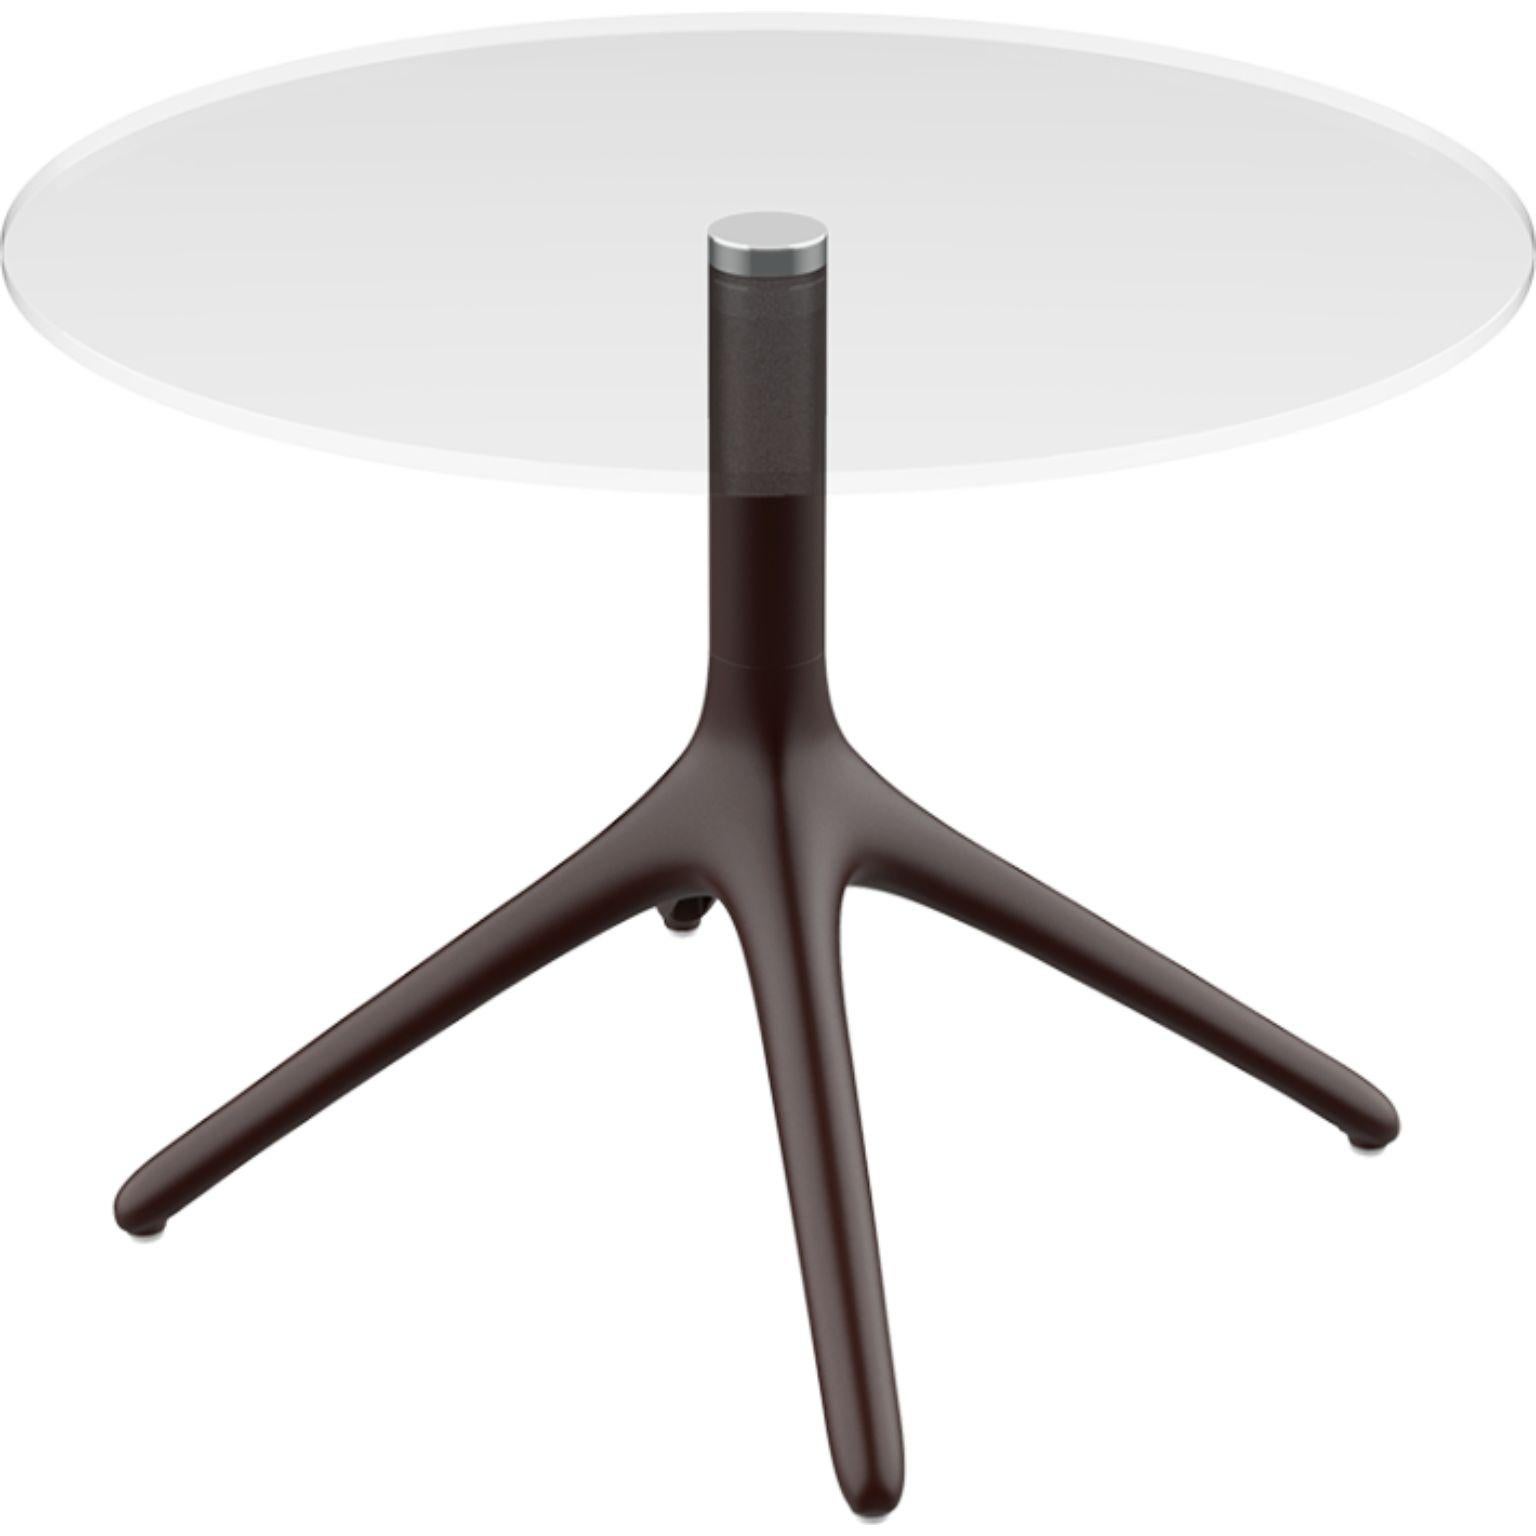 Table Uni 50 noire de Mowee.
Dimensions : P45,5 x H50 cm.
Matériau : Aluminium, verre Tempered.
Poids : 5 kg.
Disponible également en différentes couleurs et finitions. Version pliable disponible. 

Une table conçue pour être la plus